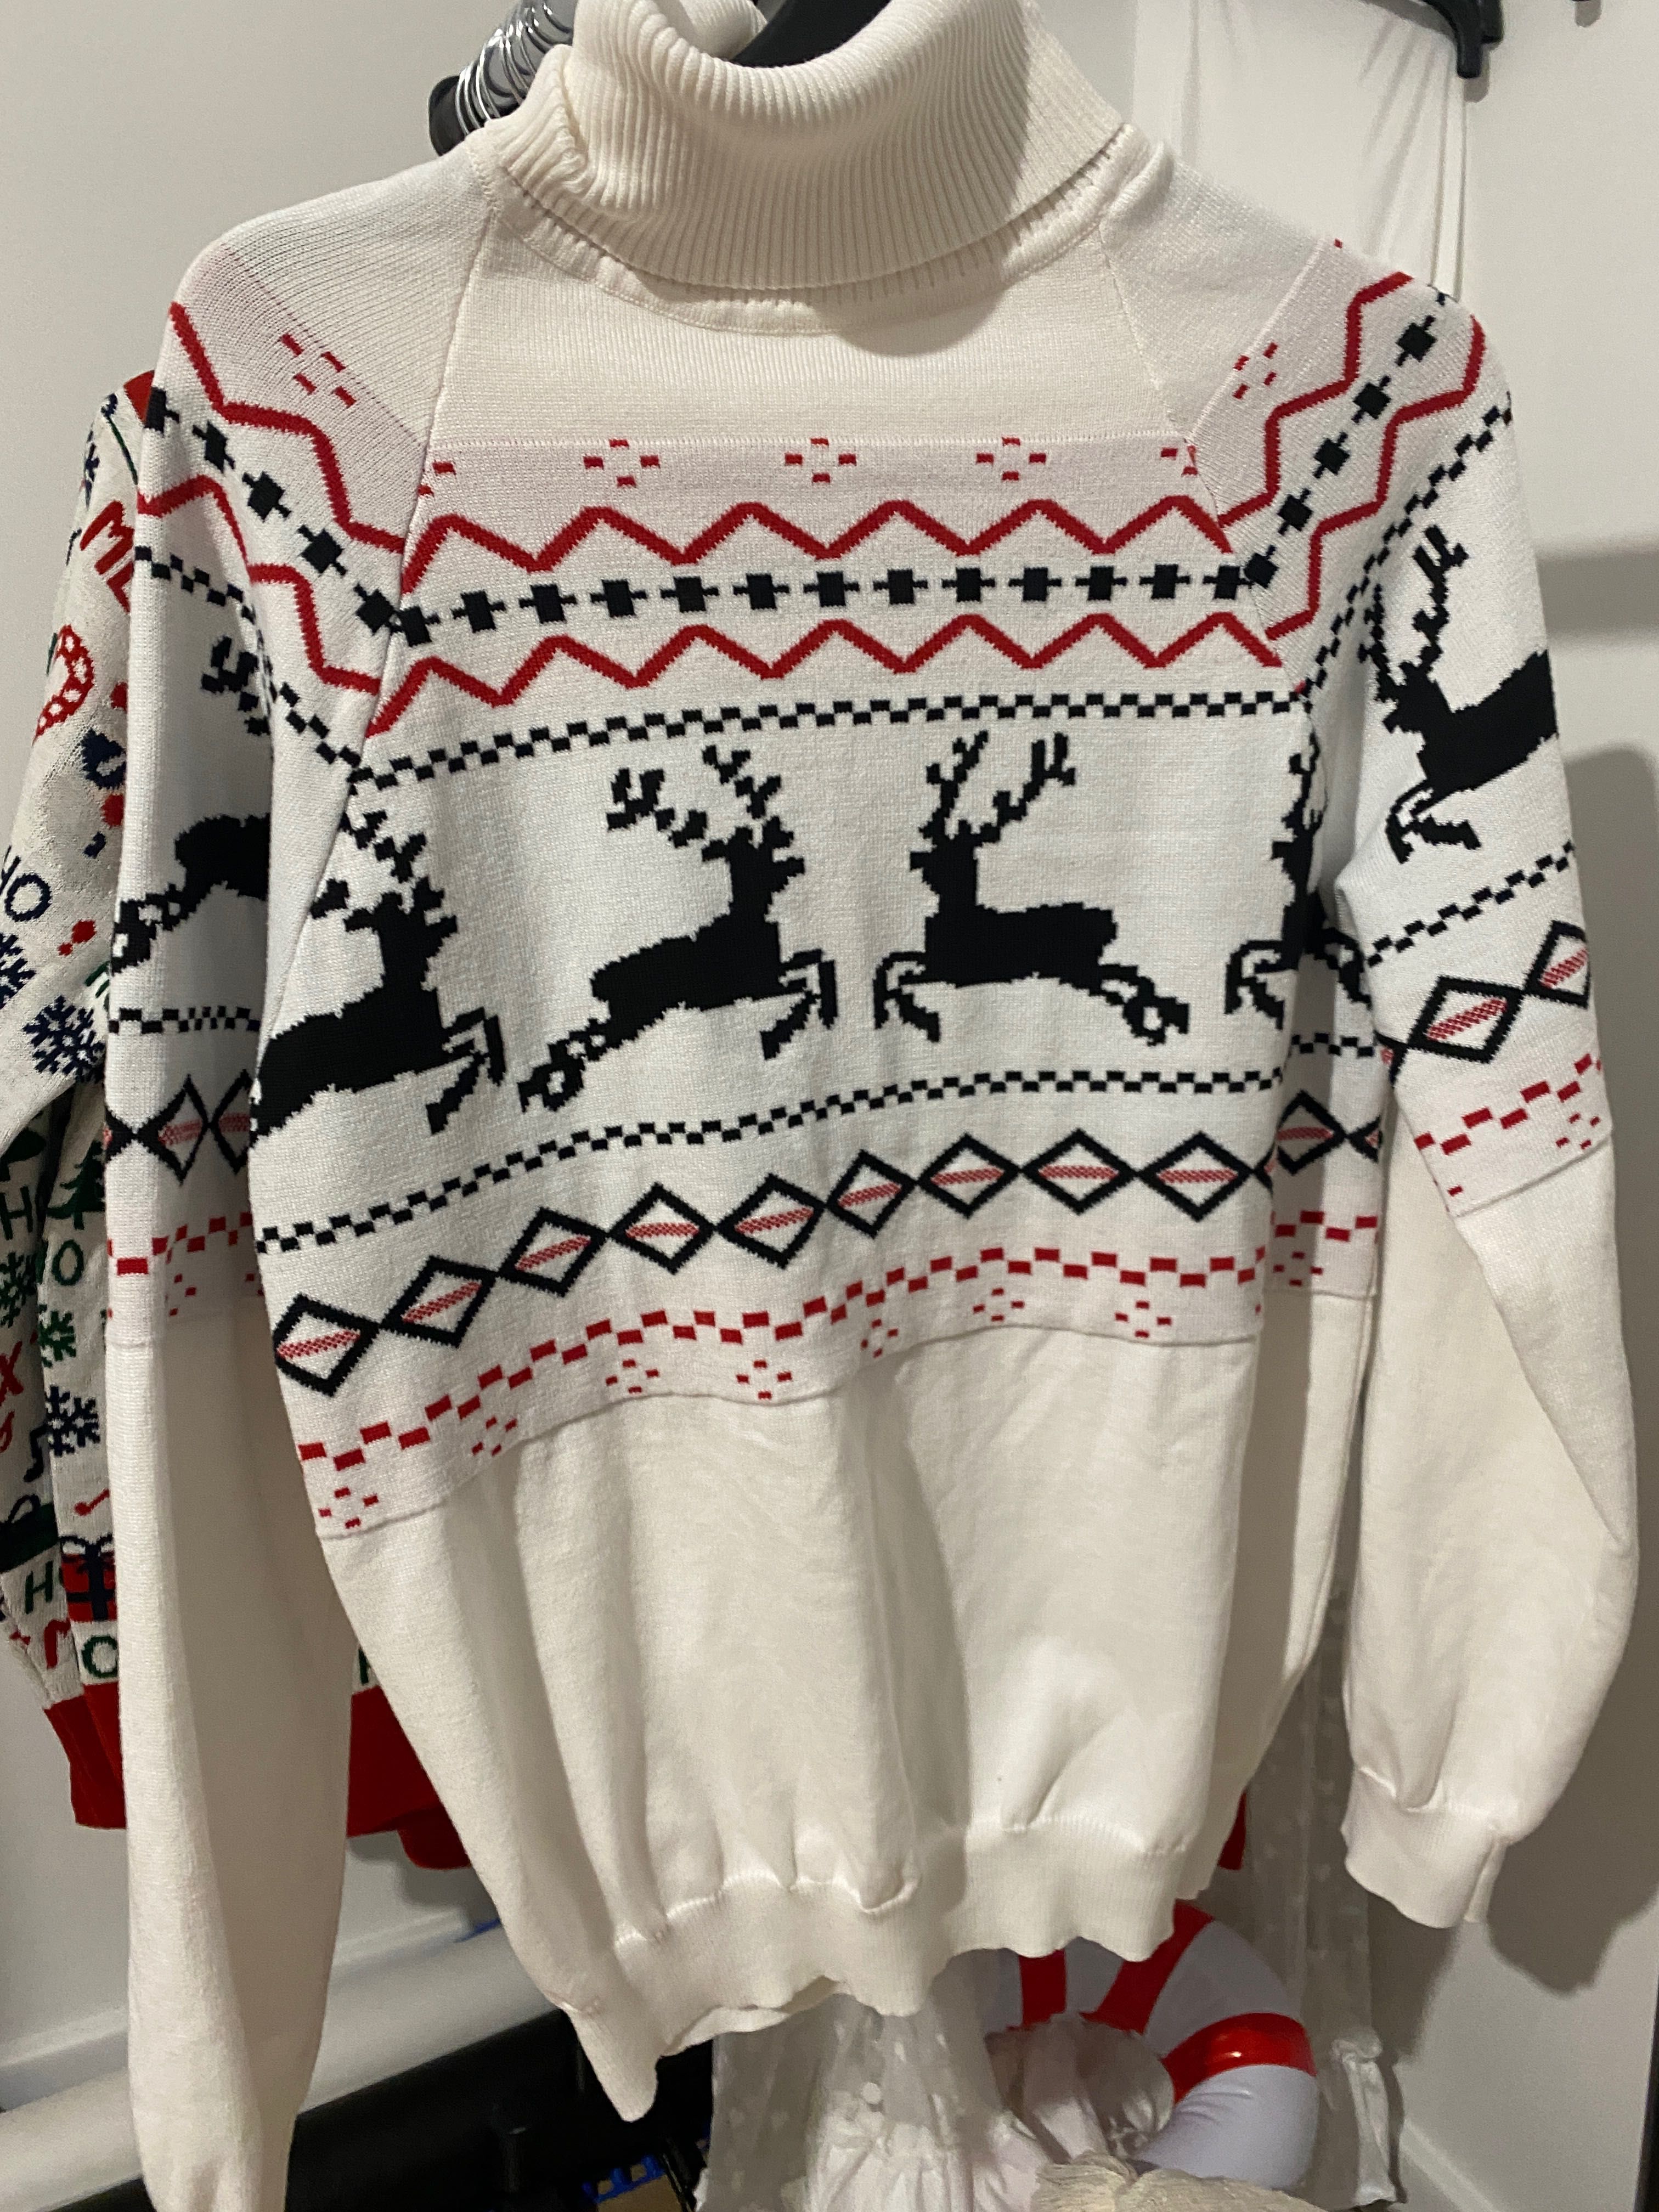 Zestaw swetrów świątecznych M, L, XL, XXL